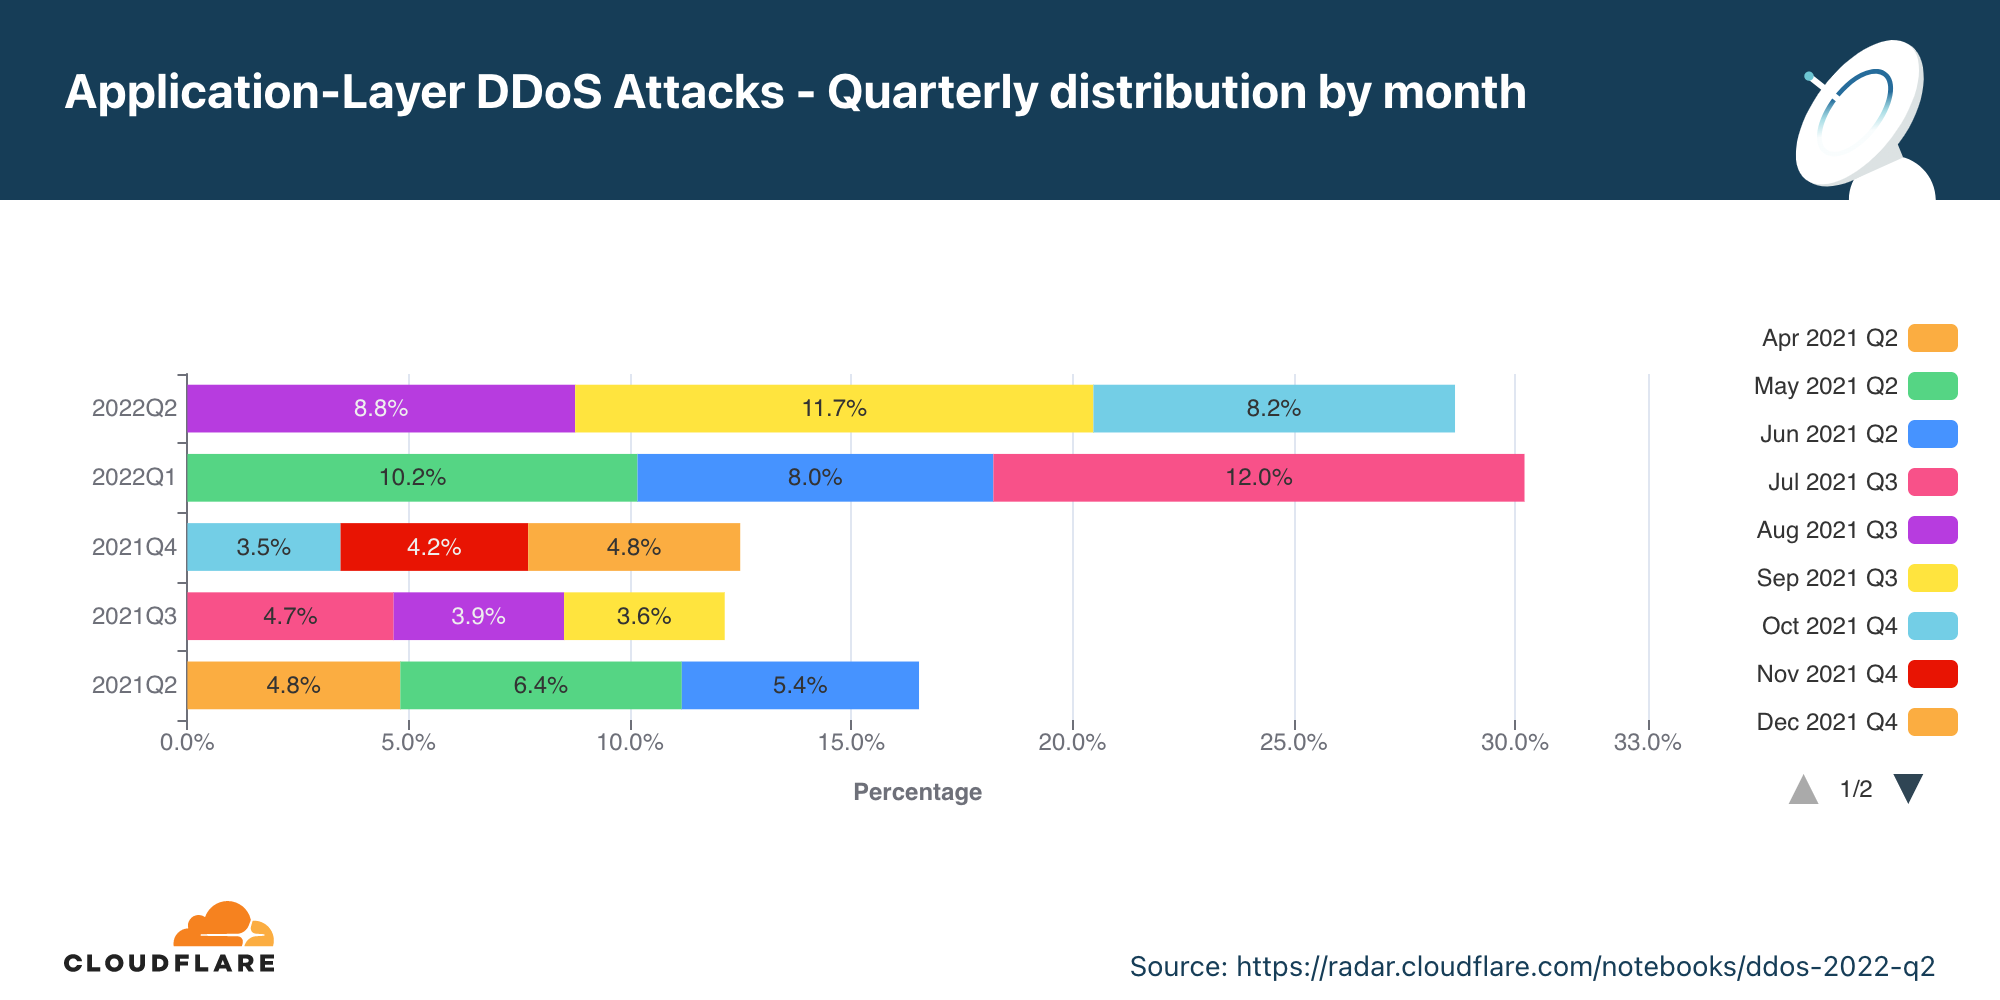 Graphique illustrant la répartition annuelle des attaques DDoS sur la couche applicative relevées chaque mois au cours des 12 derniers mois